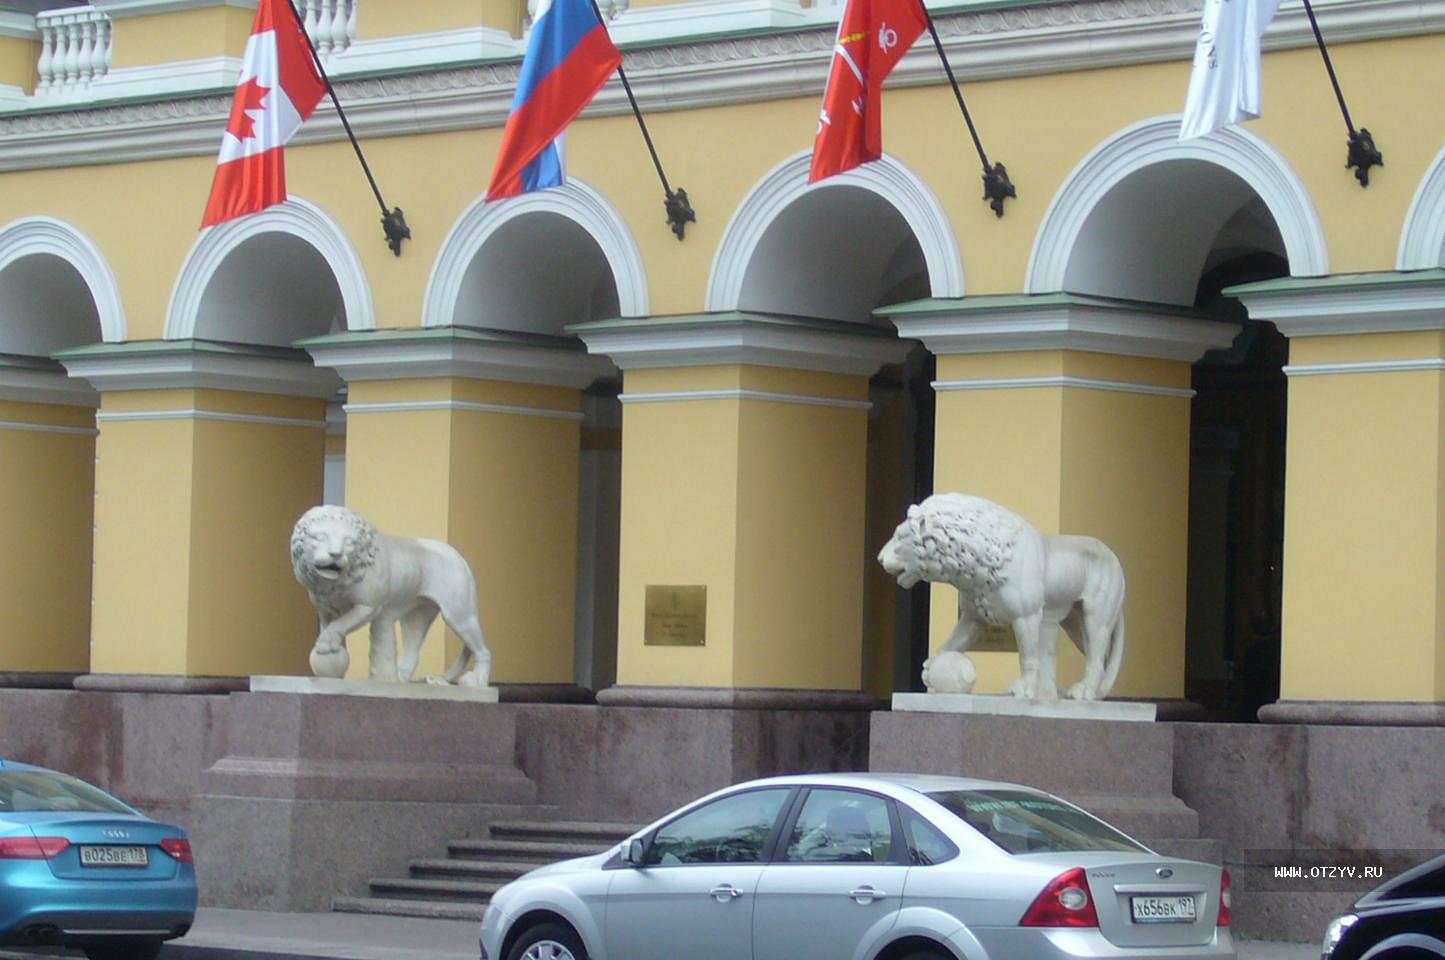 Львы в музее Санкт-Петербург